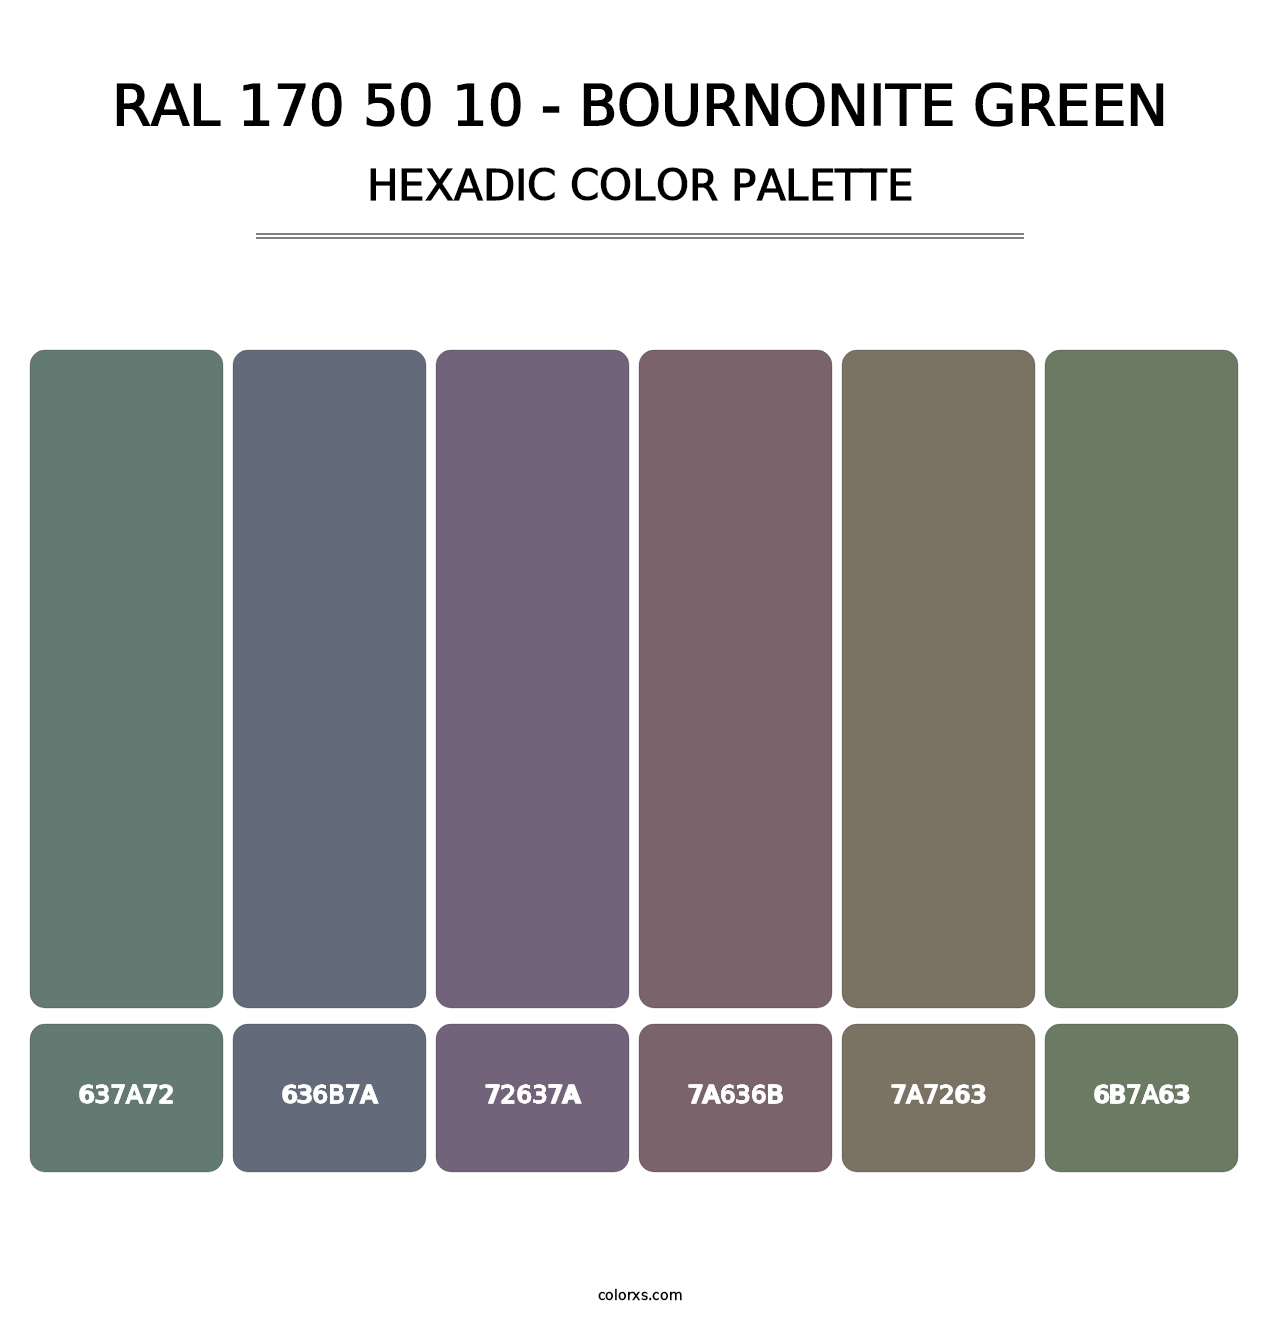 RAL 170 50 10 - Bournonite Green - Hexadic Color Palette